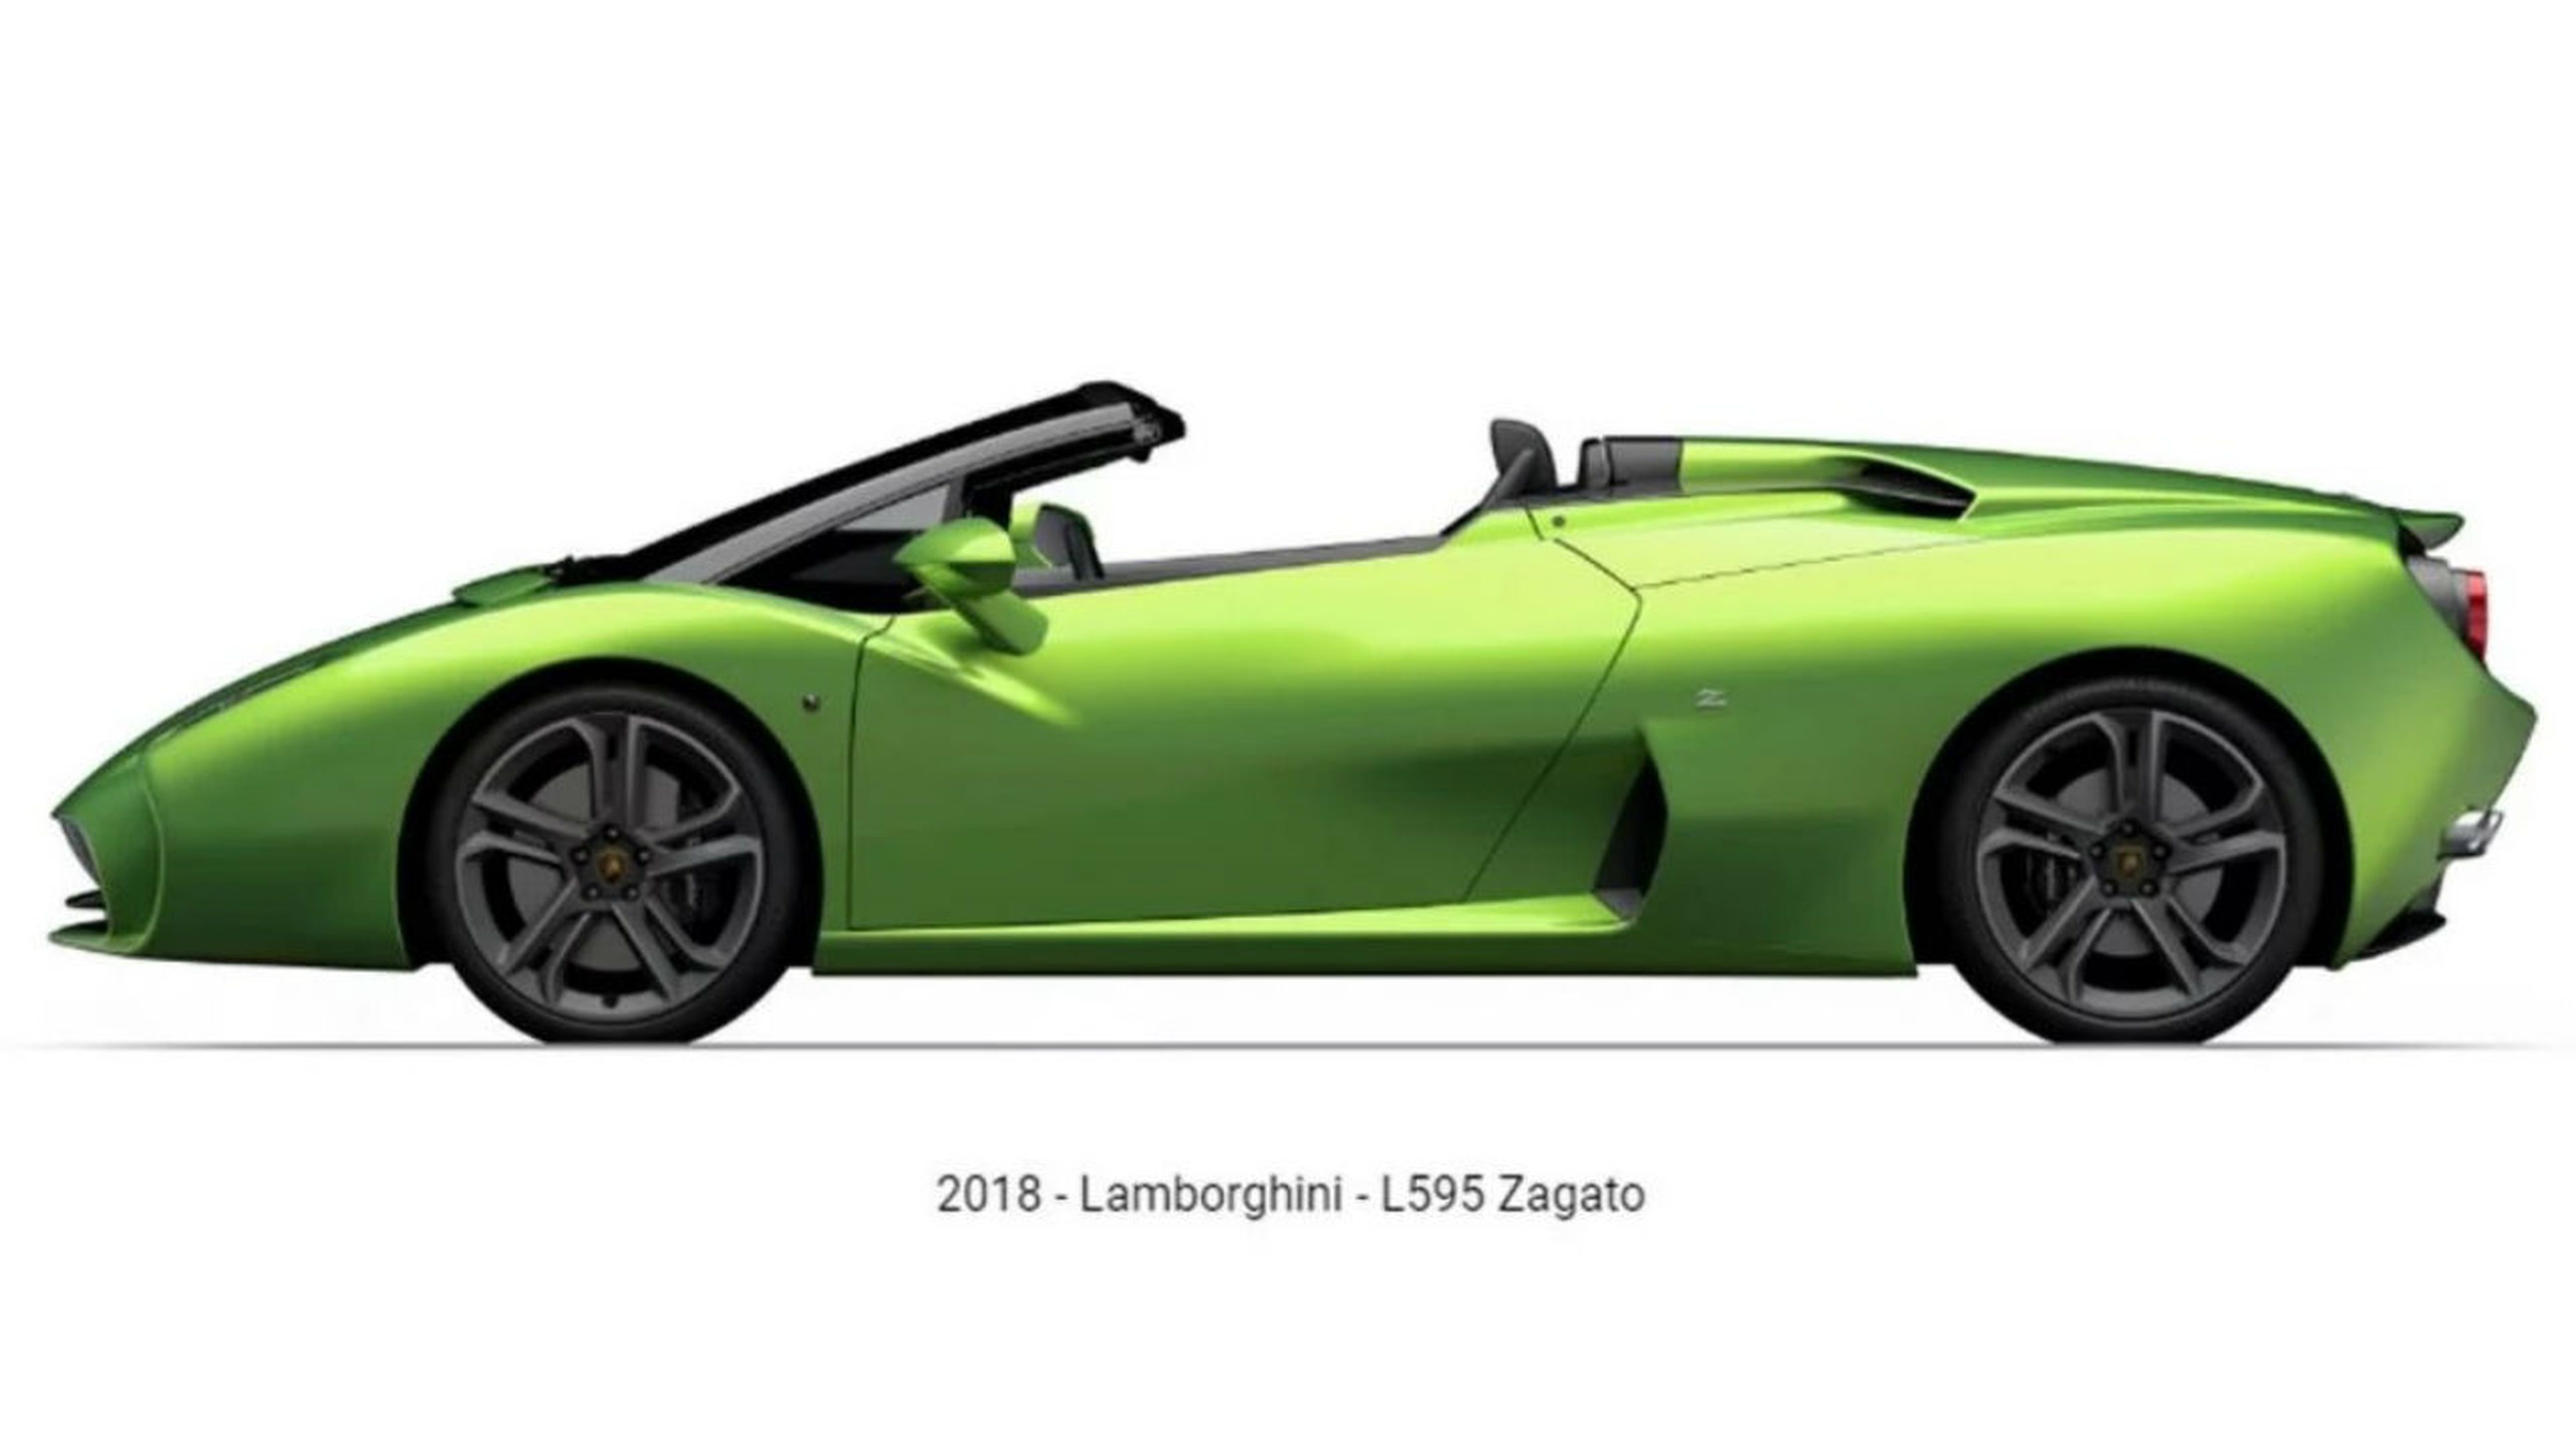 Lamborghini 5-95 Zagato Roadster